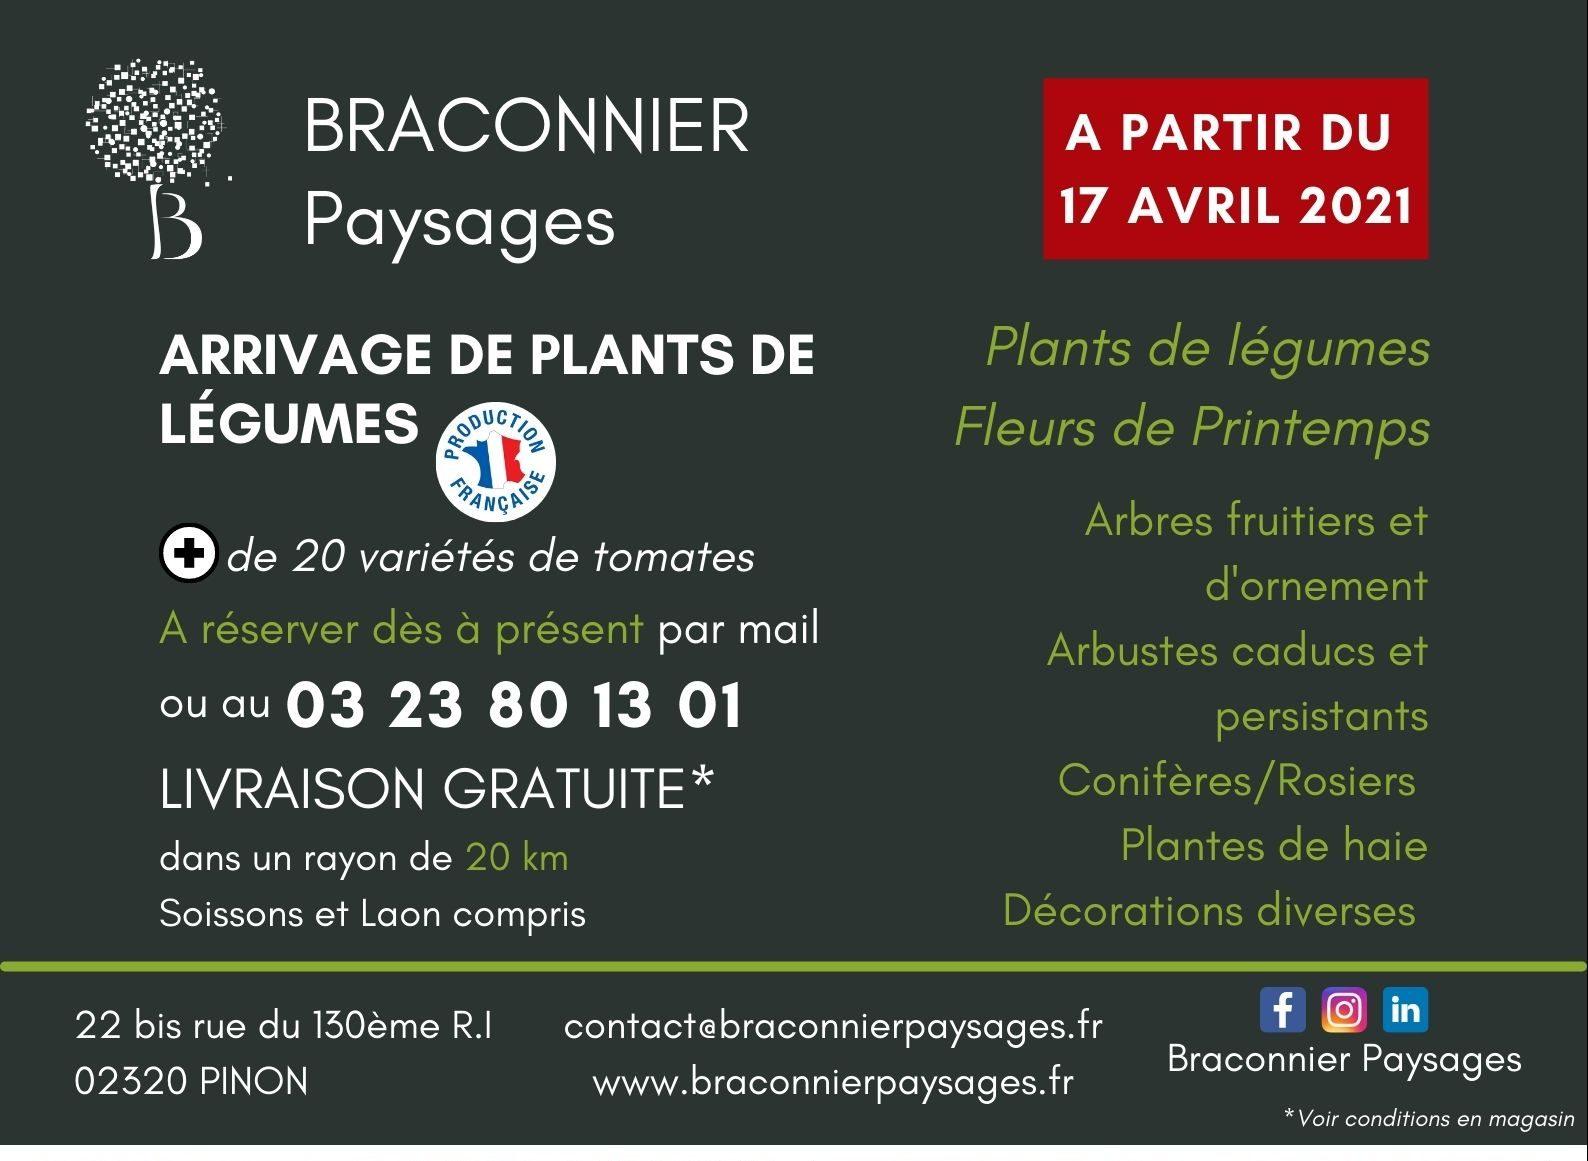 Mailing-Plants-de-legumes-2-e1618554998354